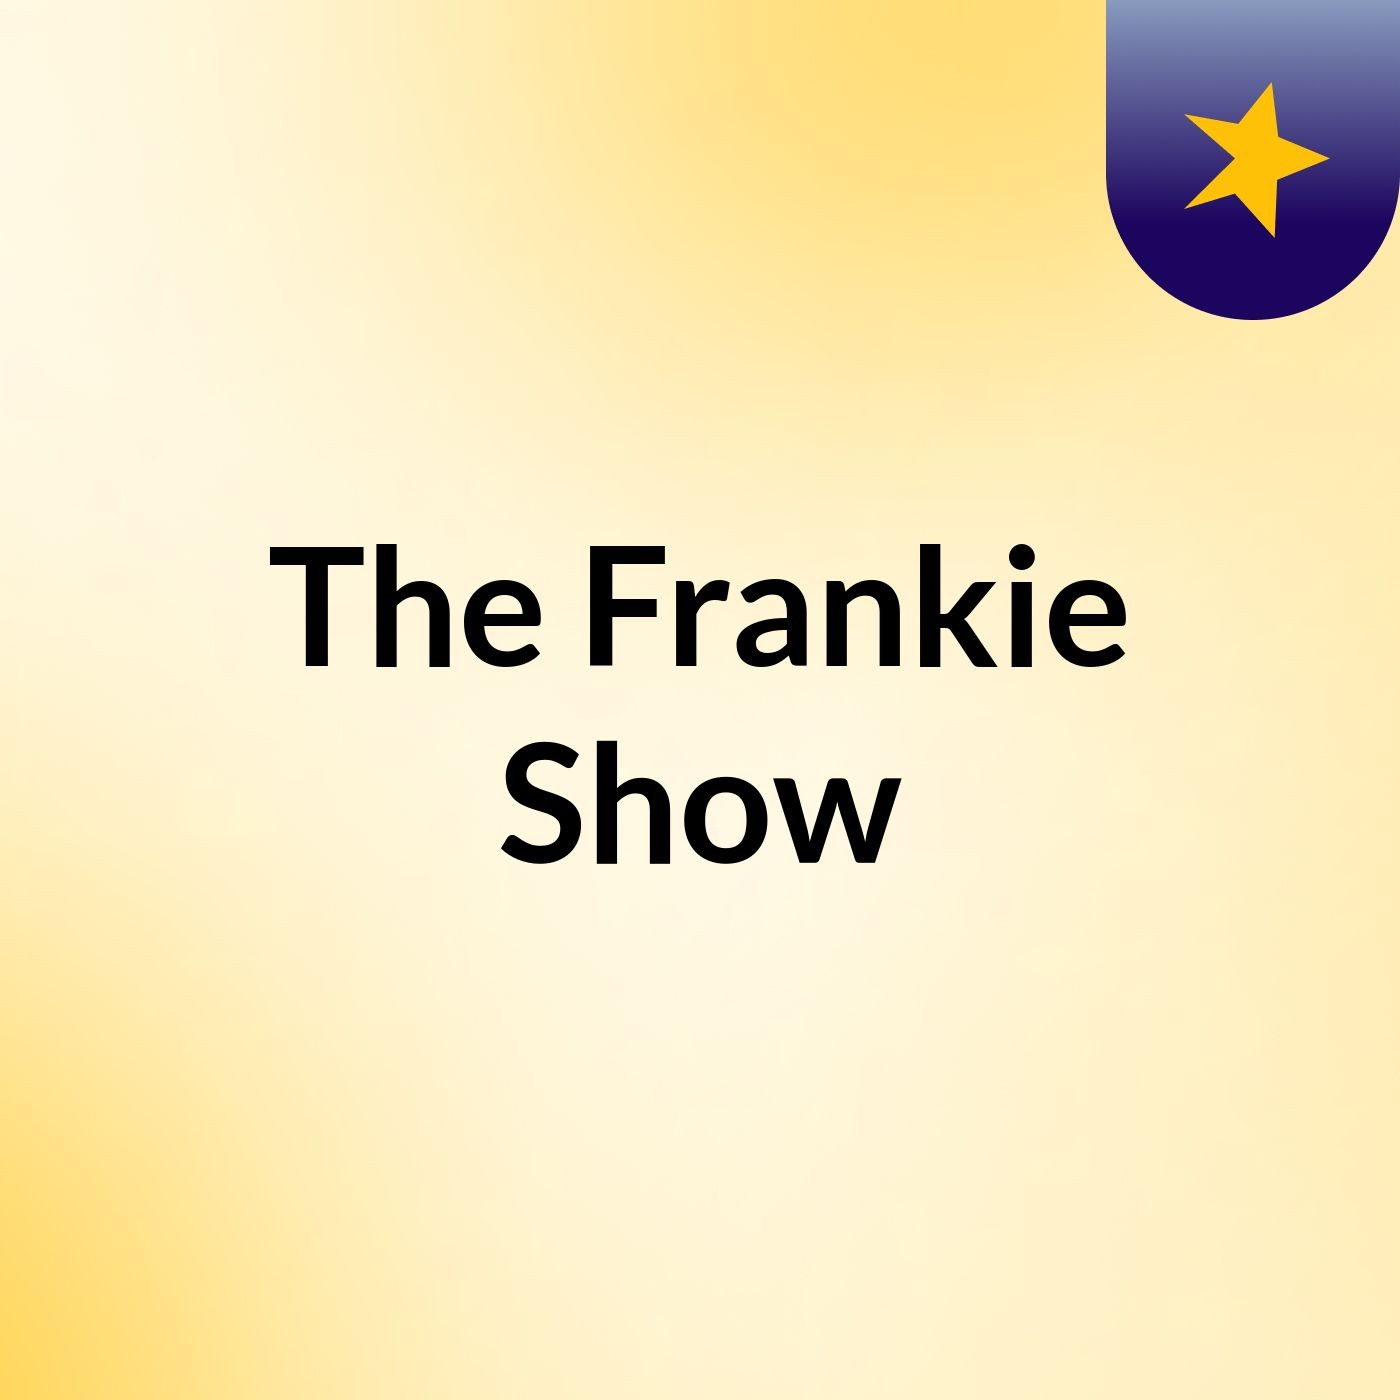 The Frankie Show